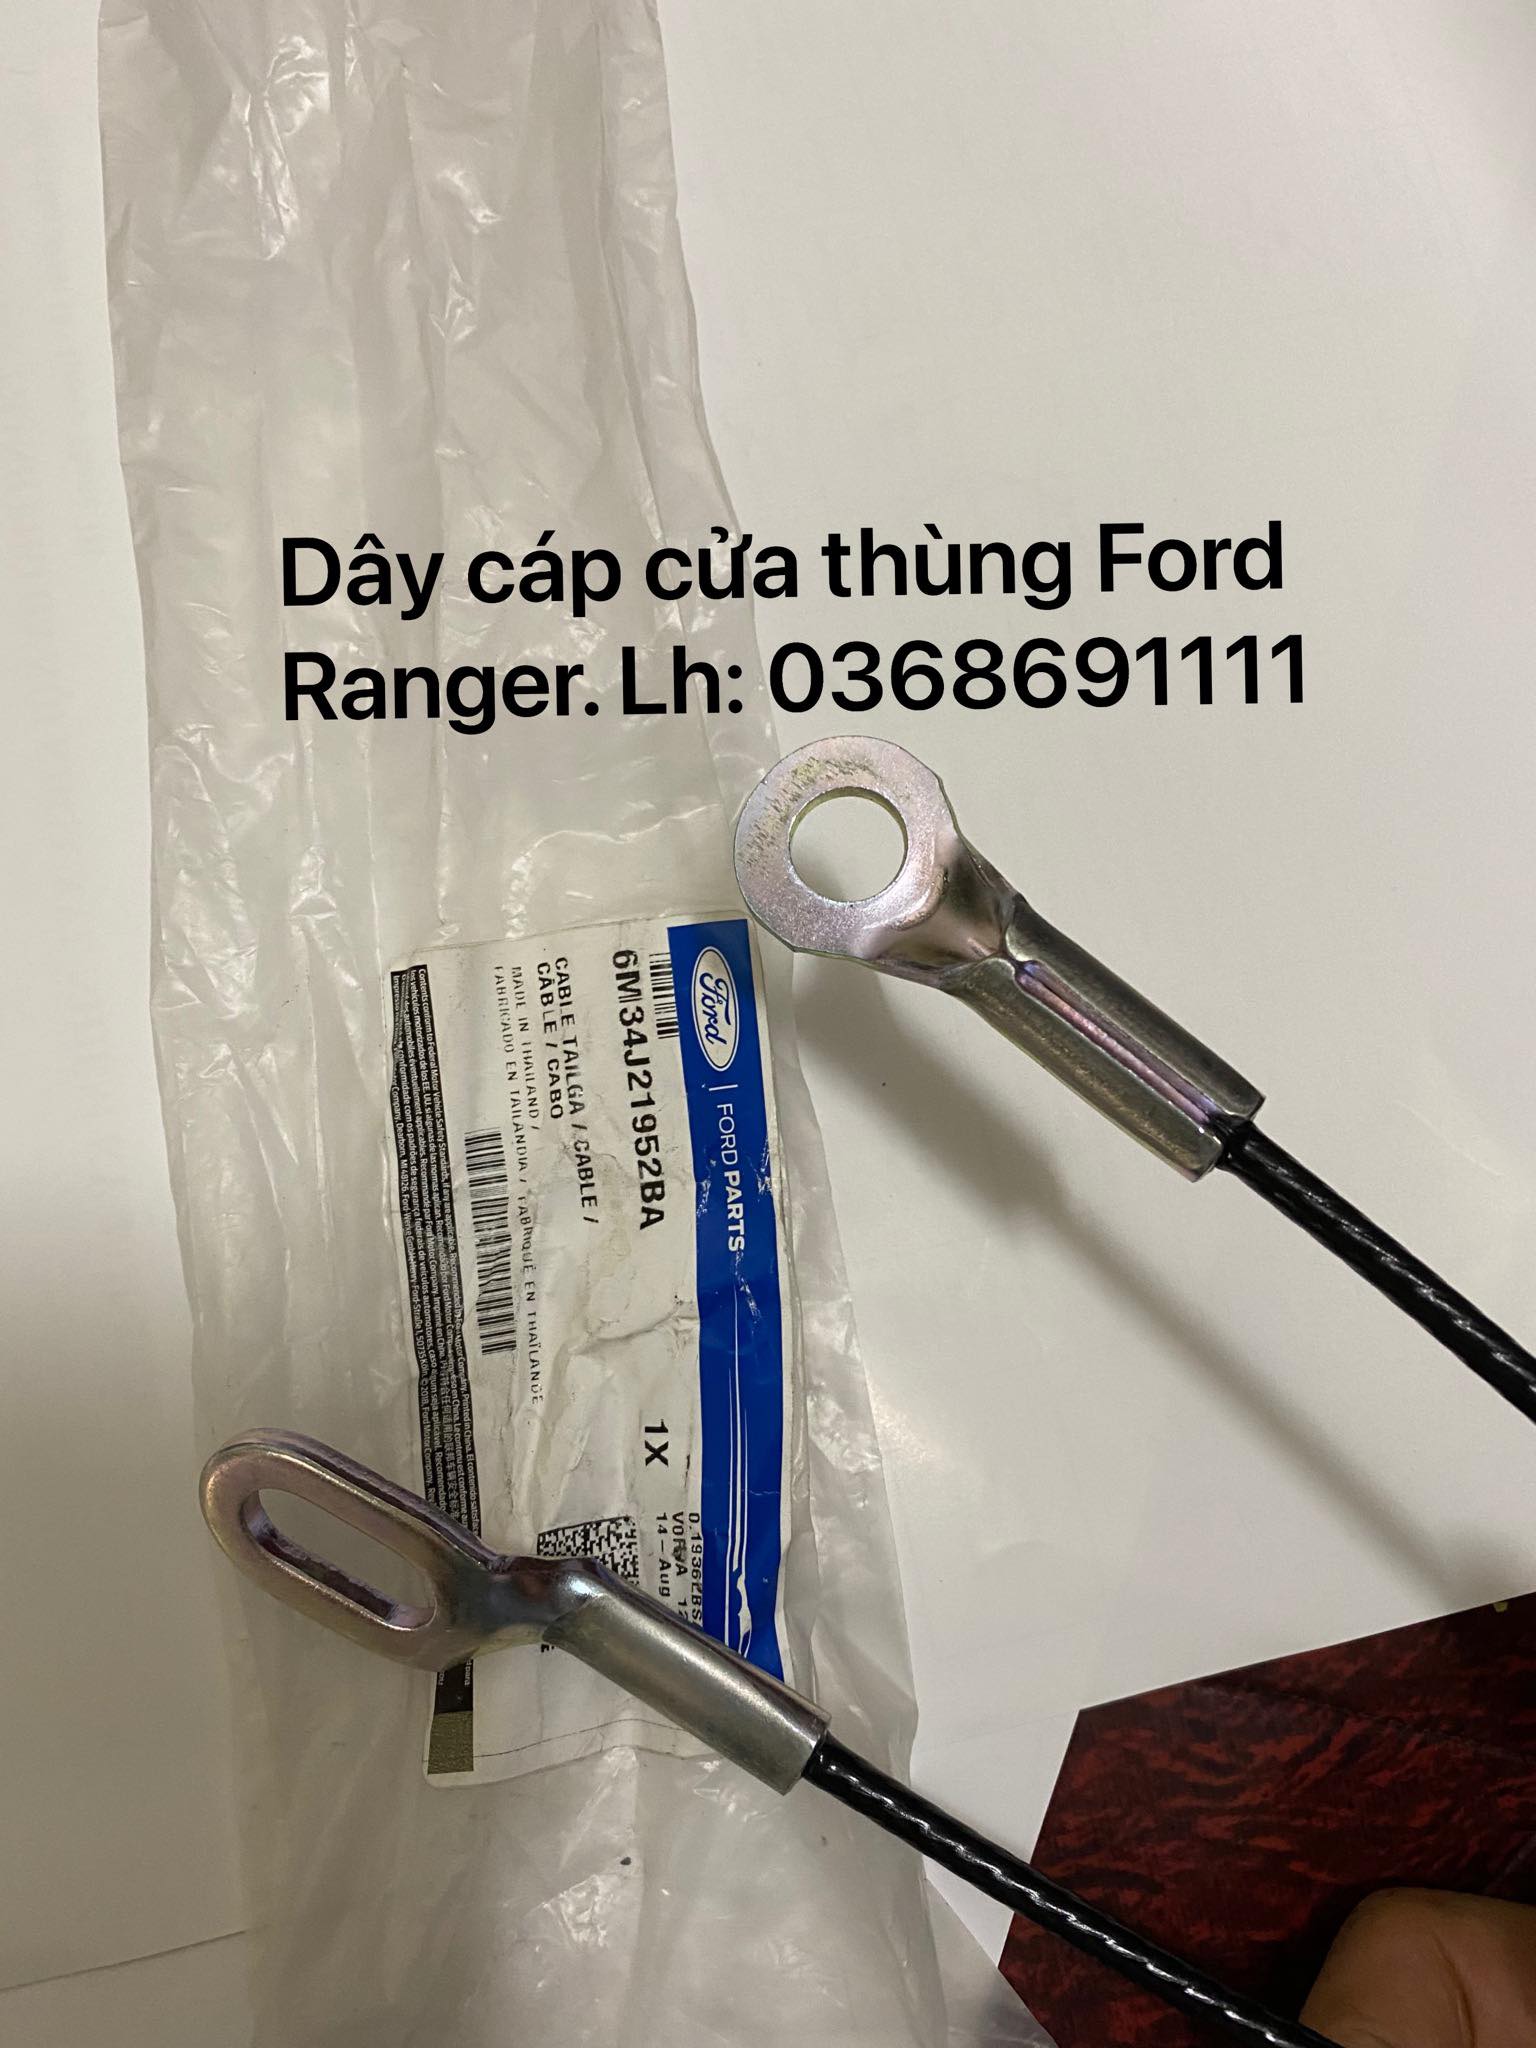 Dây cáp cửa thùng Ford Ranger (cáp treo bưởng sau Ford Ranger)3